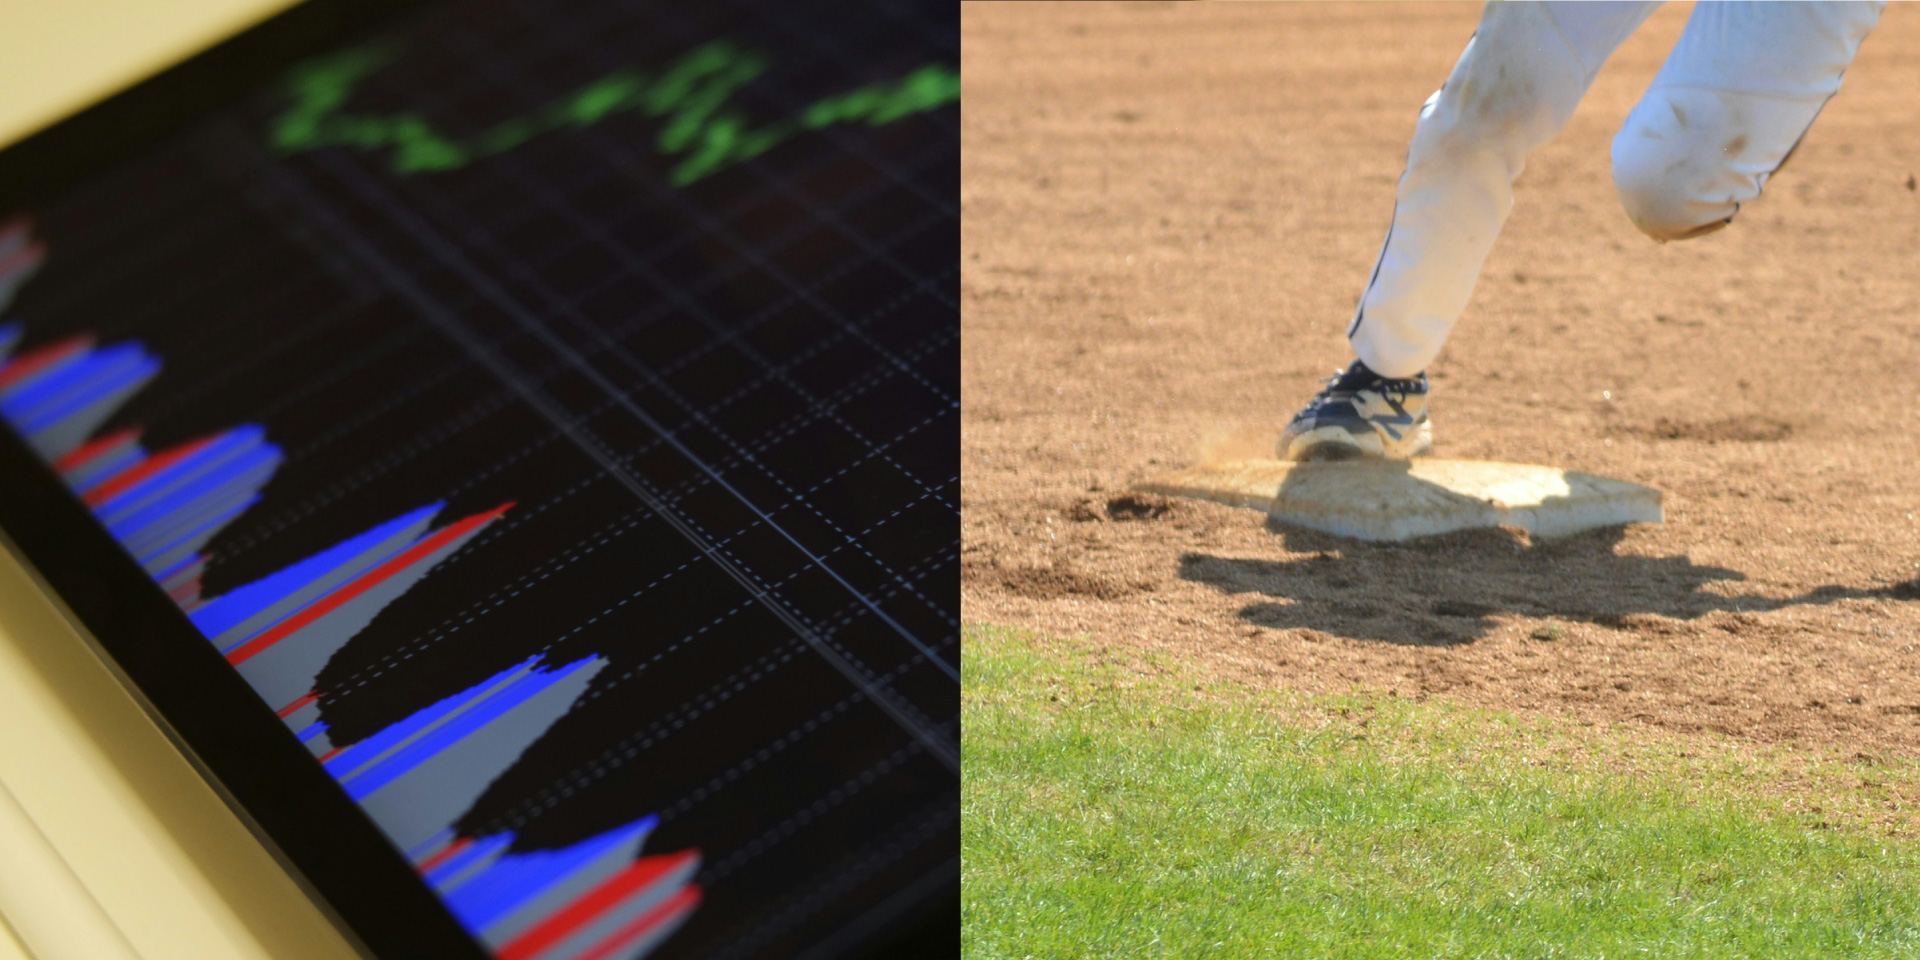 Bilderrätsel aus zwei Bilder: Linkes Bild zeigt ein Tablet mit Diagrammen; rechtes Bild zeigt eine Person die auf eine Base eines Baseballfelds rennt.